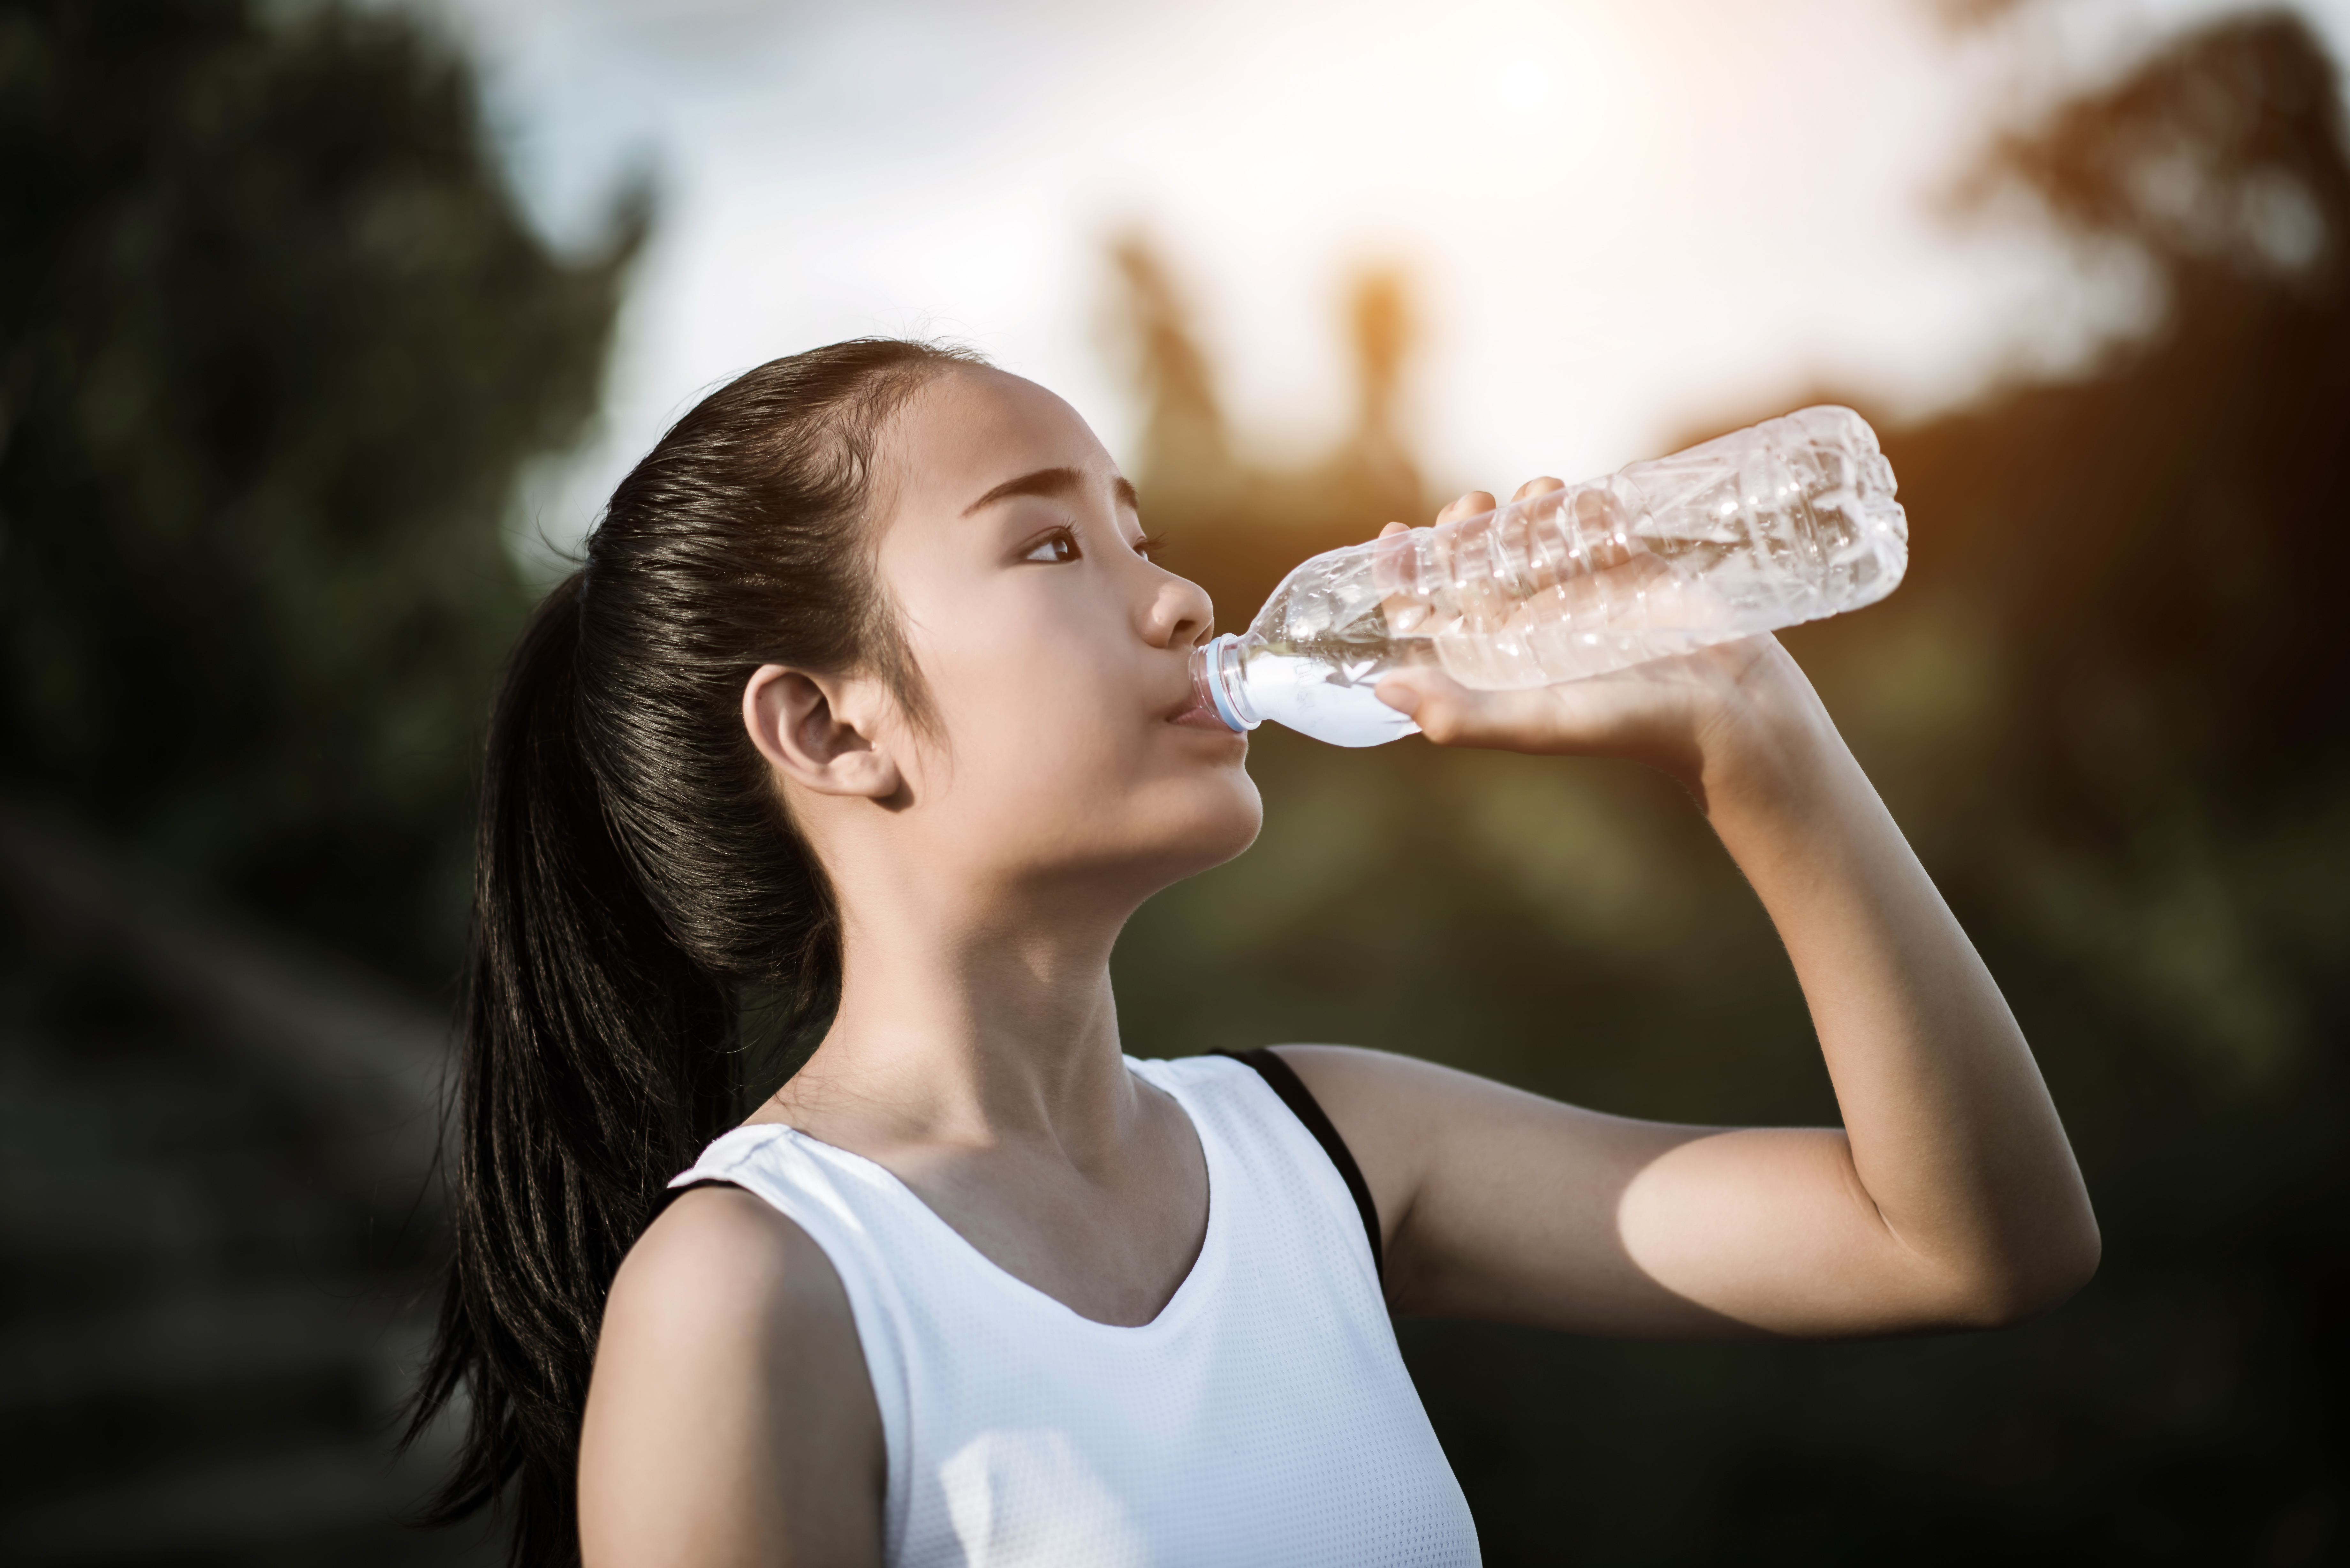 Пейте легкую воду. Девочка пьет воду. Девушка со стаканом воды. Питье воды. Девушка с питьевой водой.